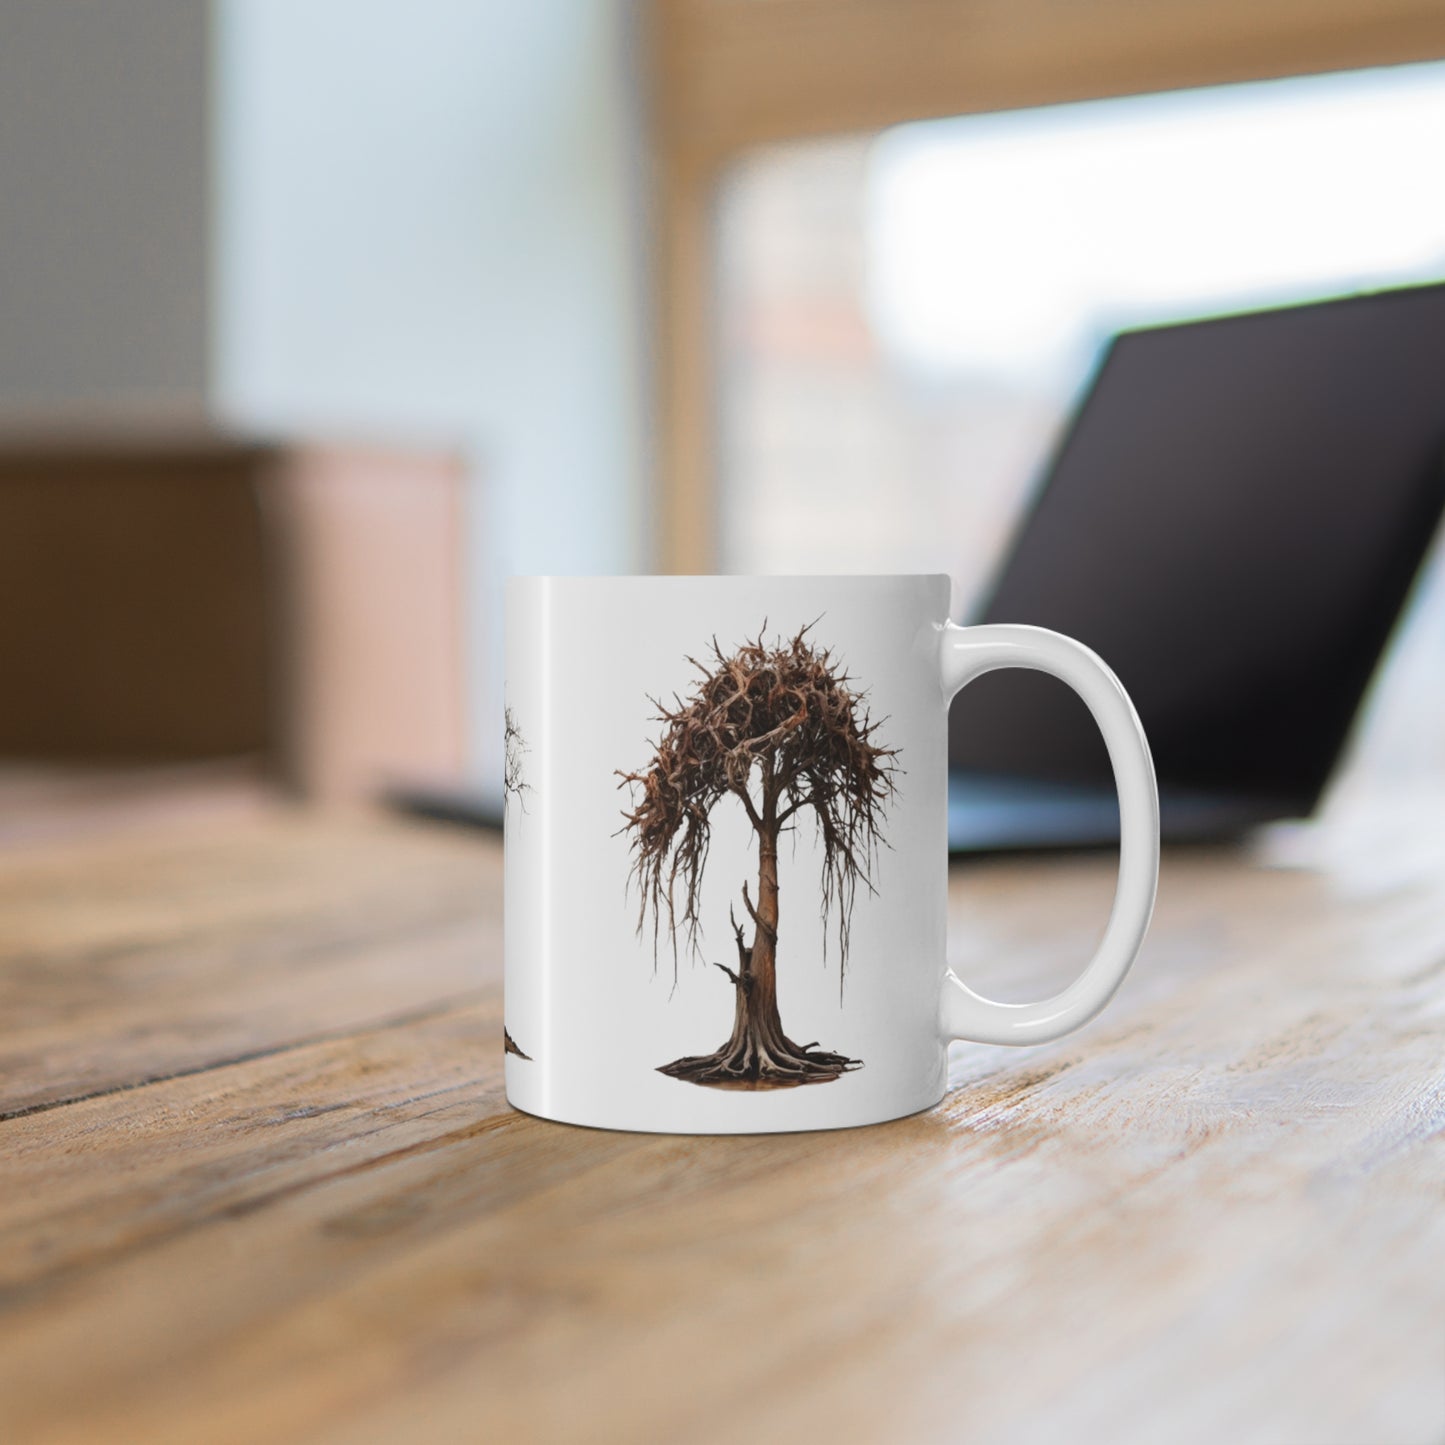 Dying Trees Mug - Ceramic Coffee Mug 11oz